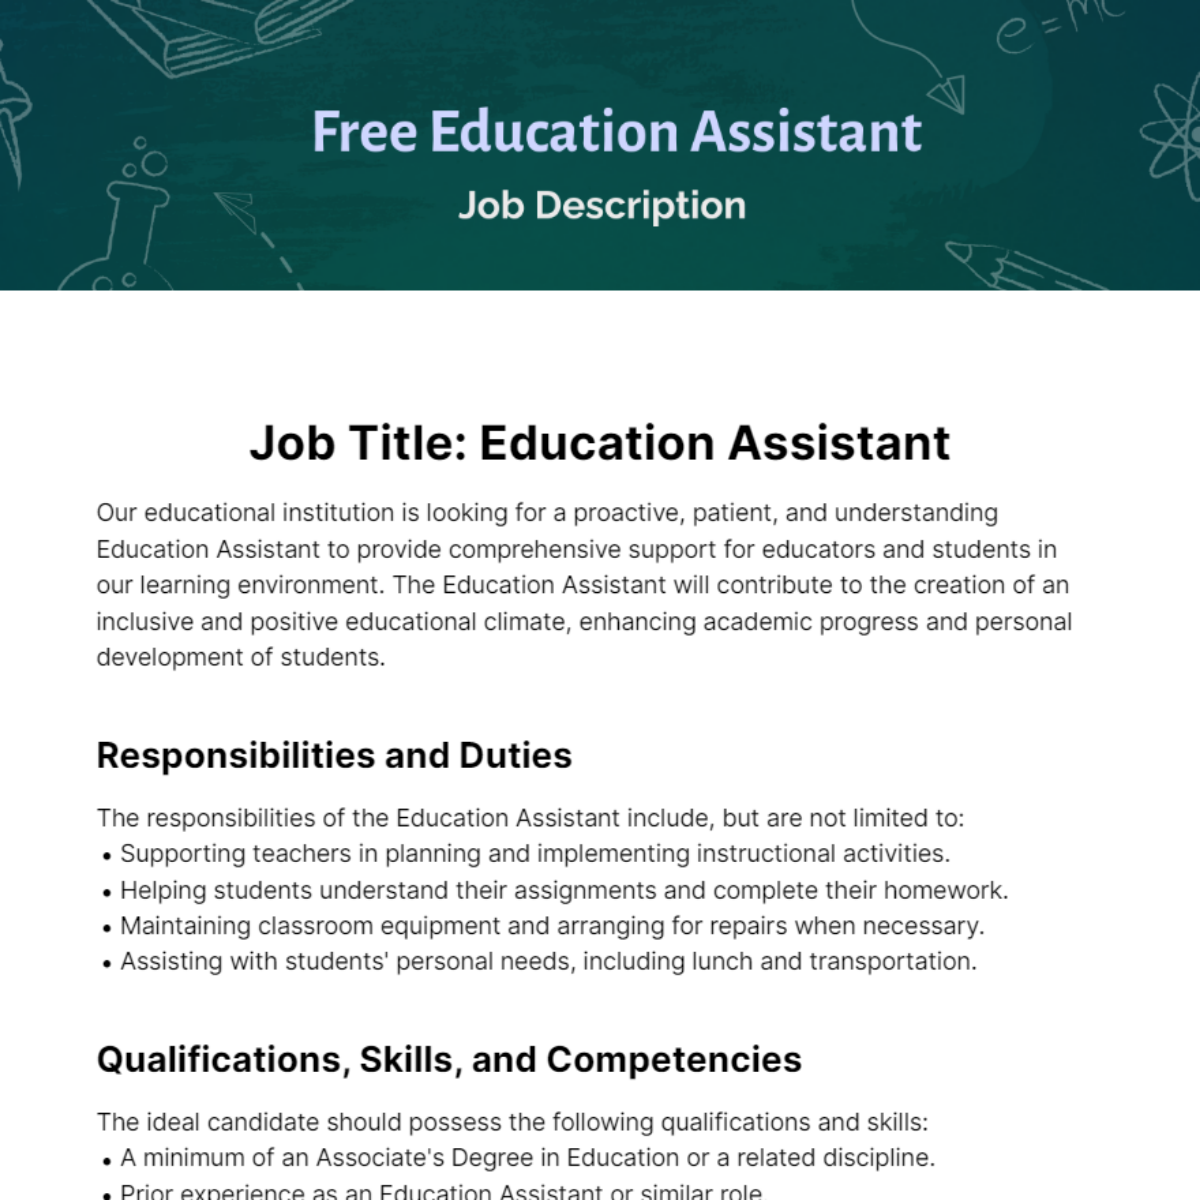 Free Education Assistant Job Description Template